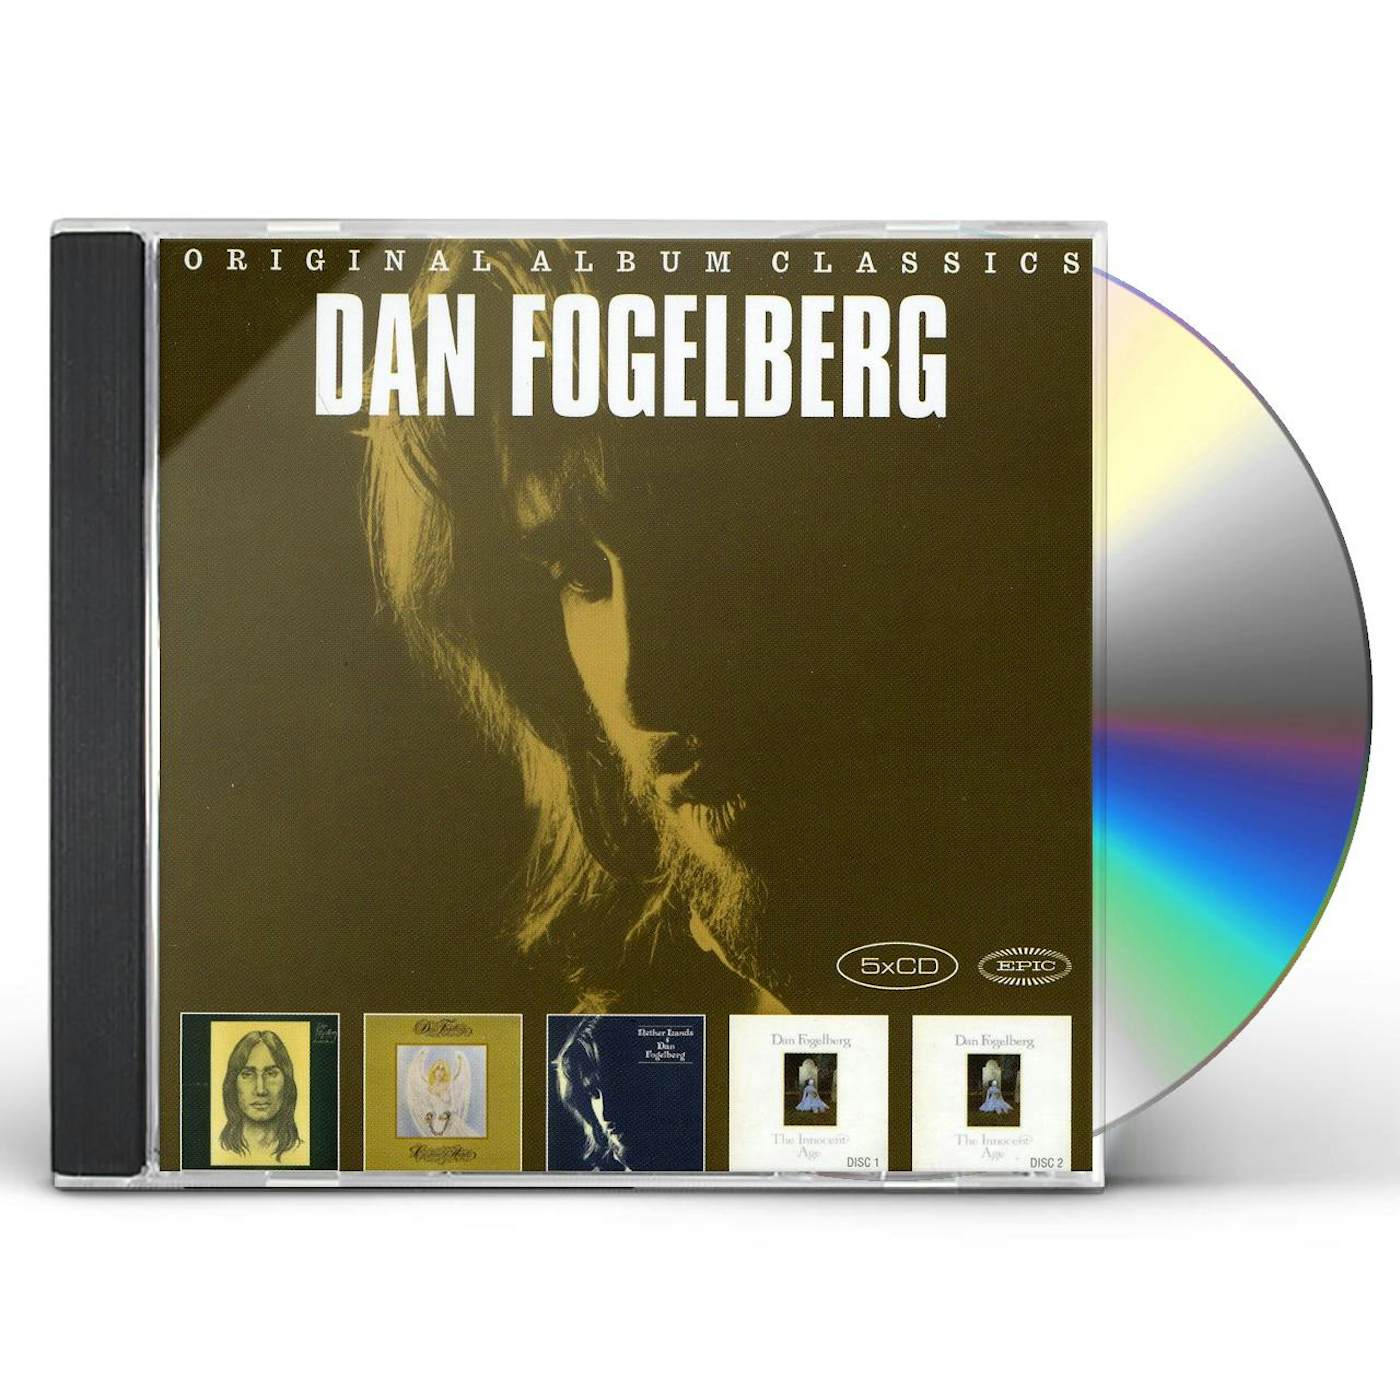 Dan Fogelberg ORIGINAL ALBUM CLASSICS CD